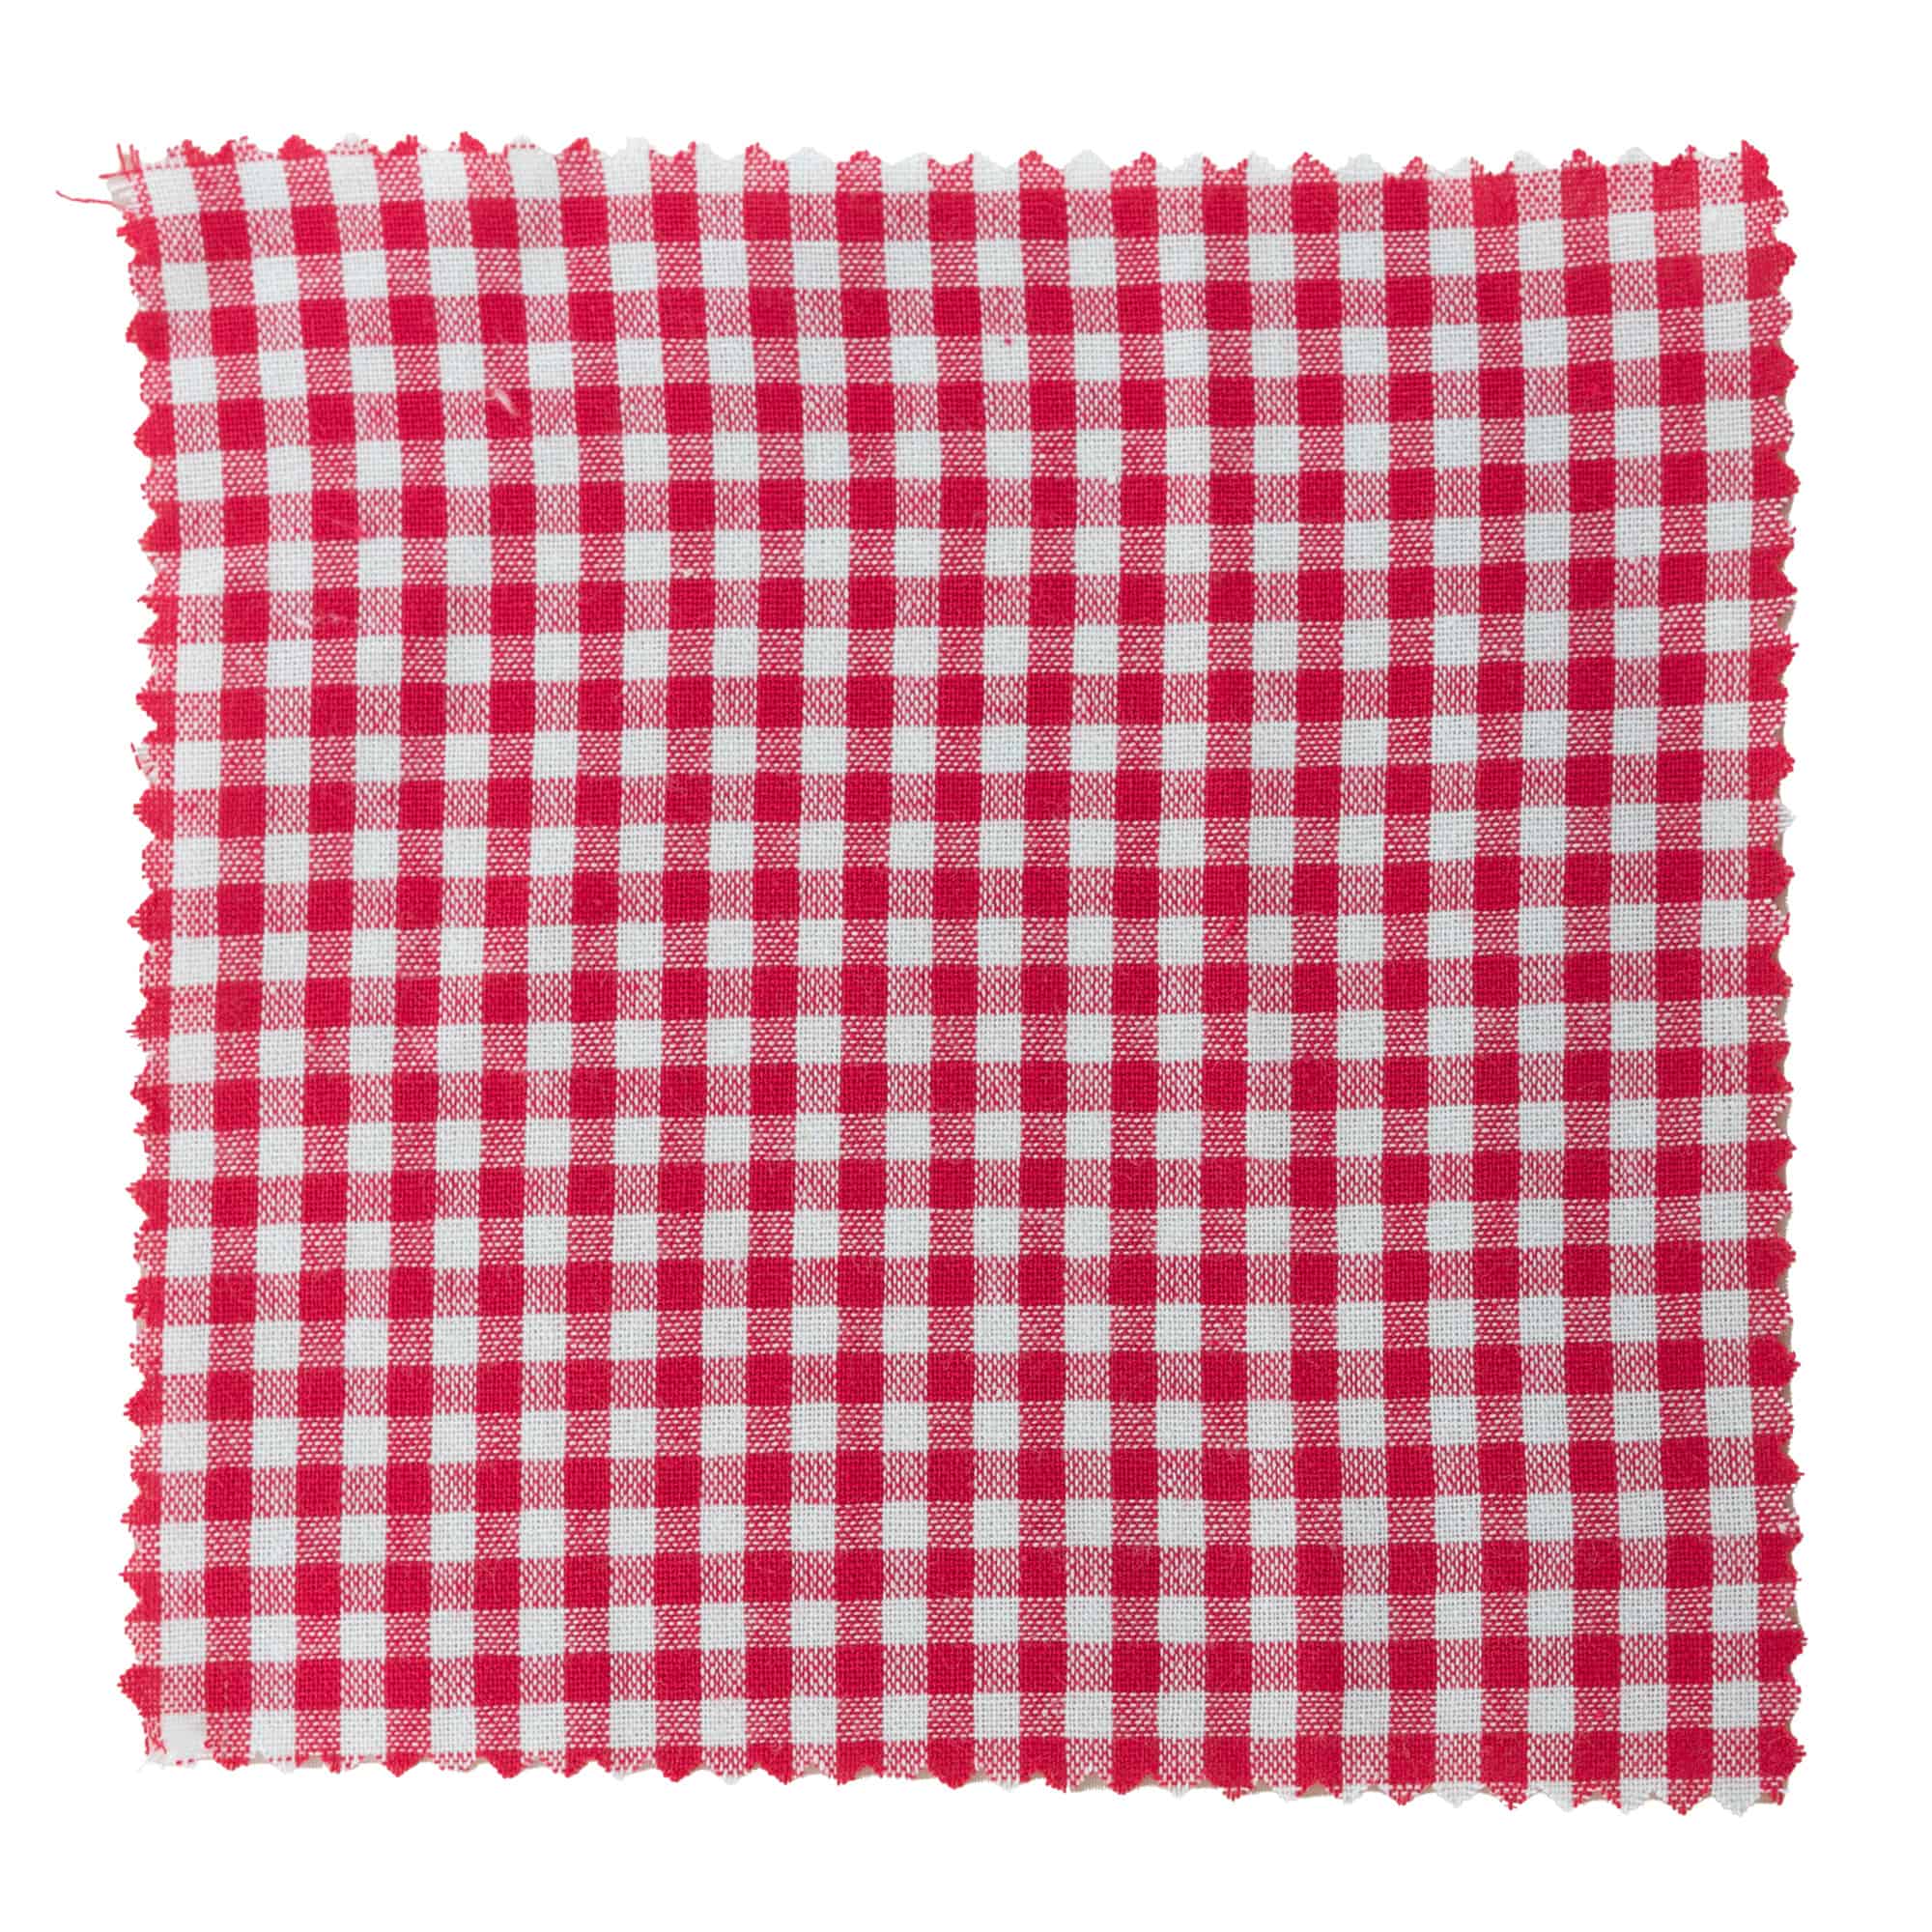 Kapturek na słoik w kratkę 15x15, kwadratowy, materiał tekstylny, kolor czerwony, zamknięcie: TO58-TO82